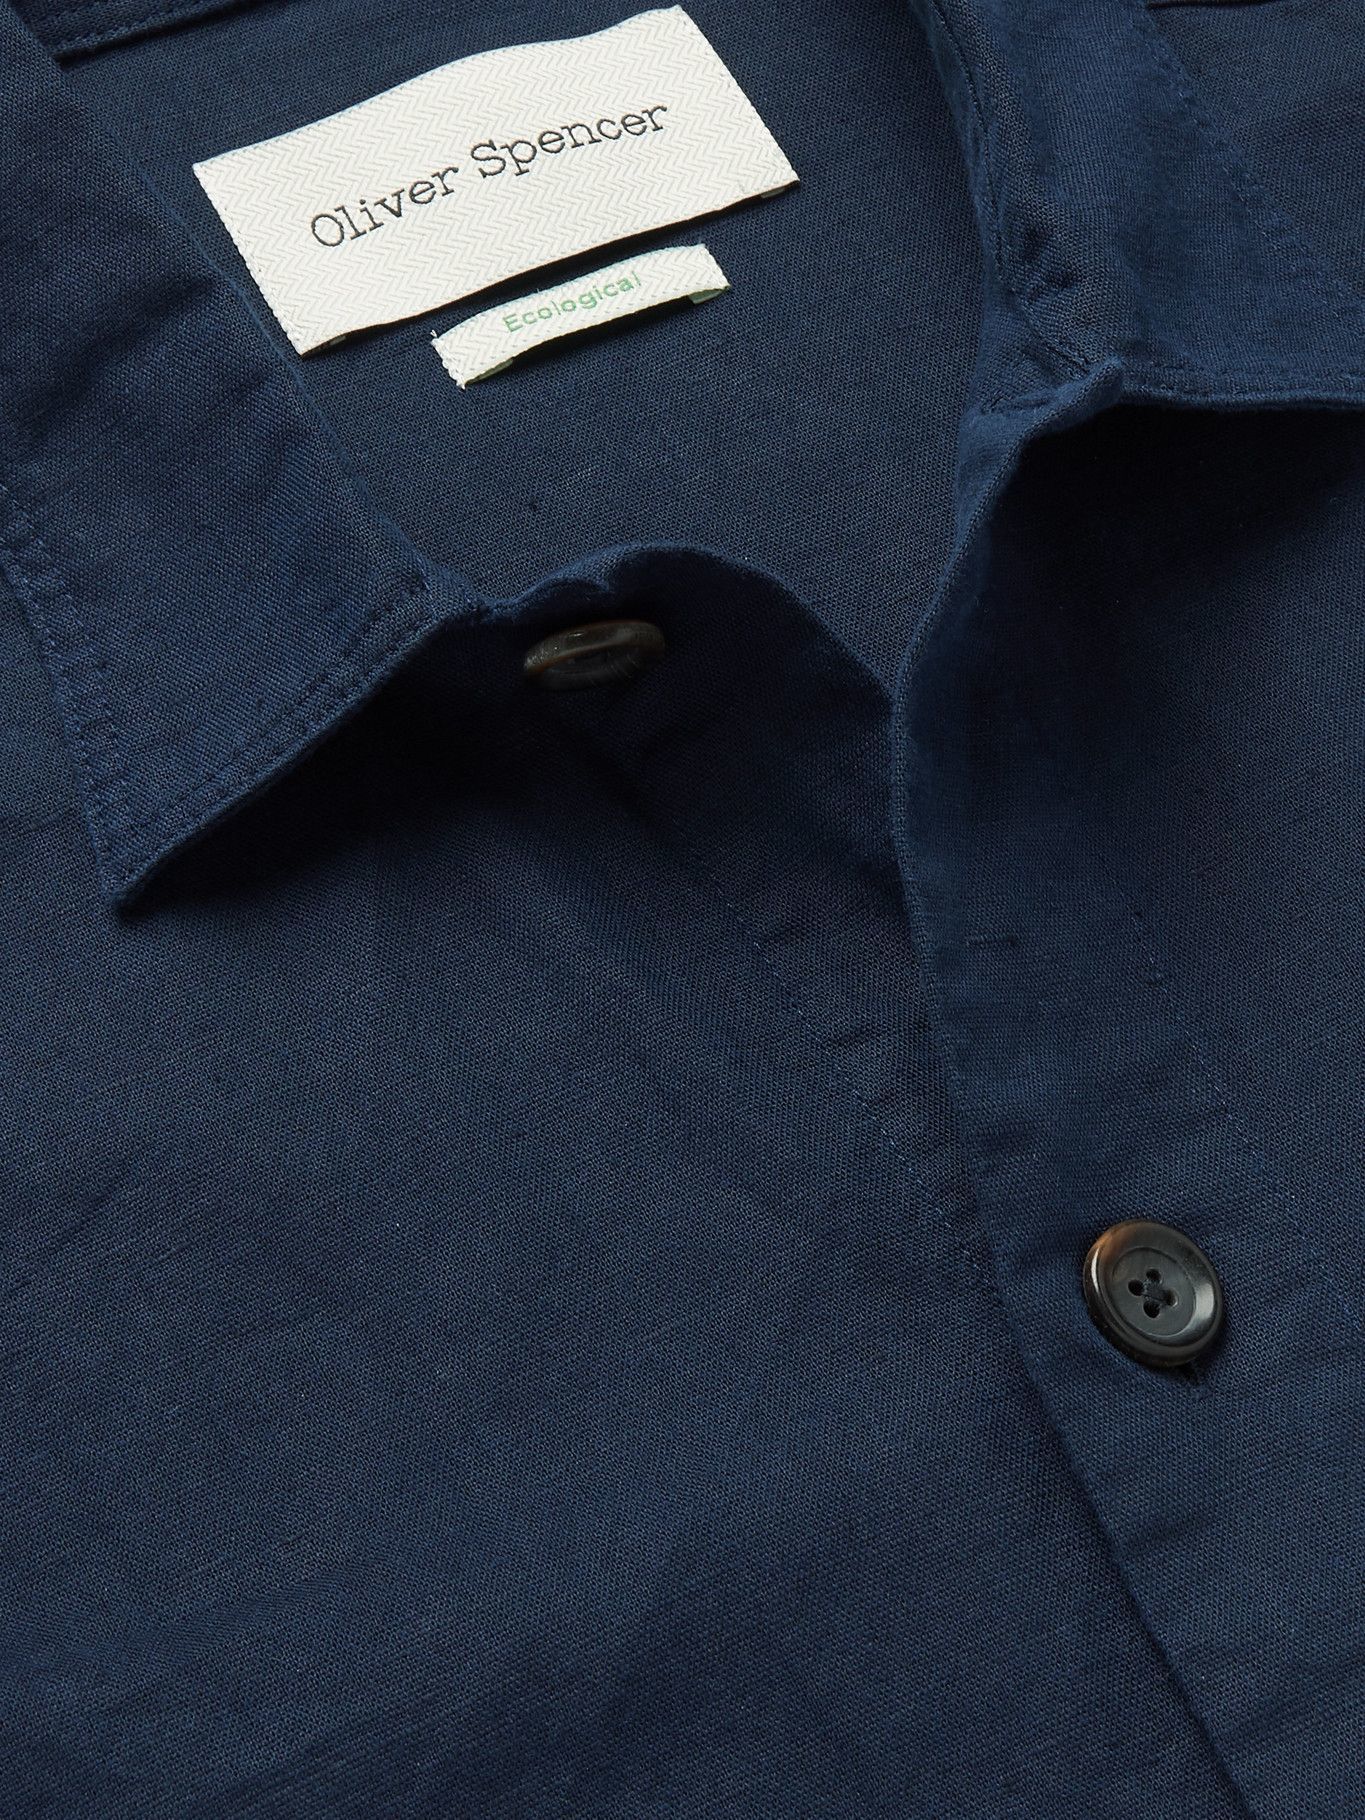 OLIVER SPENCER - Hockney Linen and Cotton-Blend Shirt Jacket - Blue